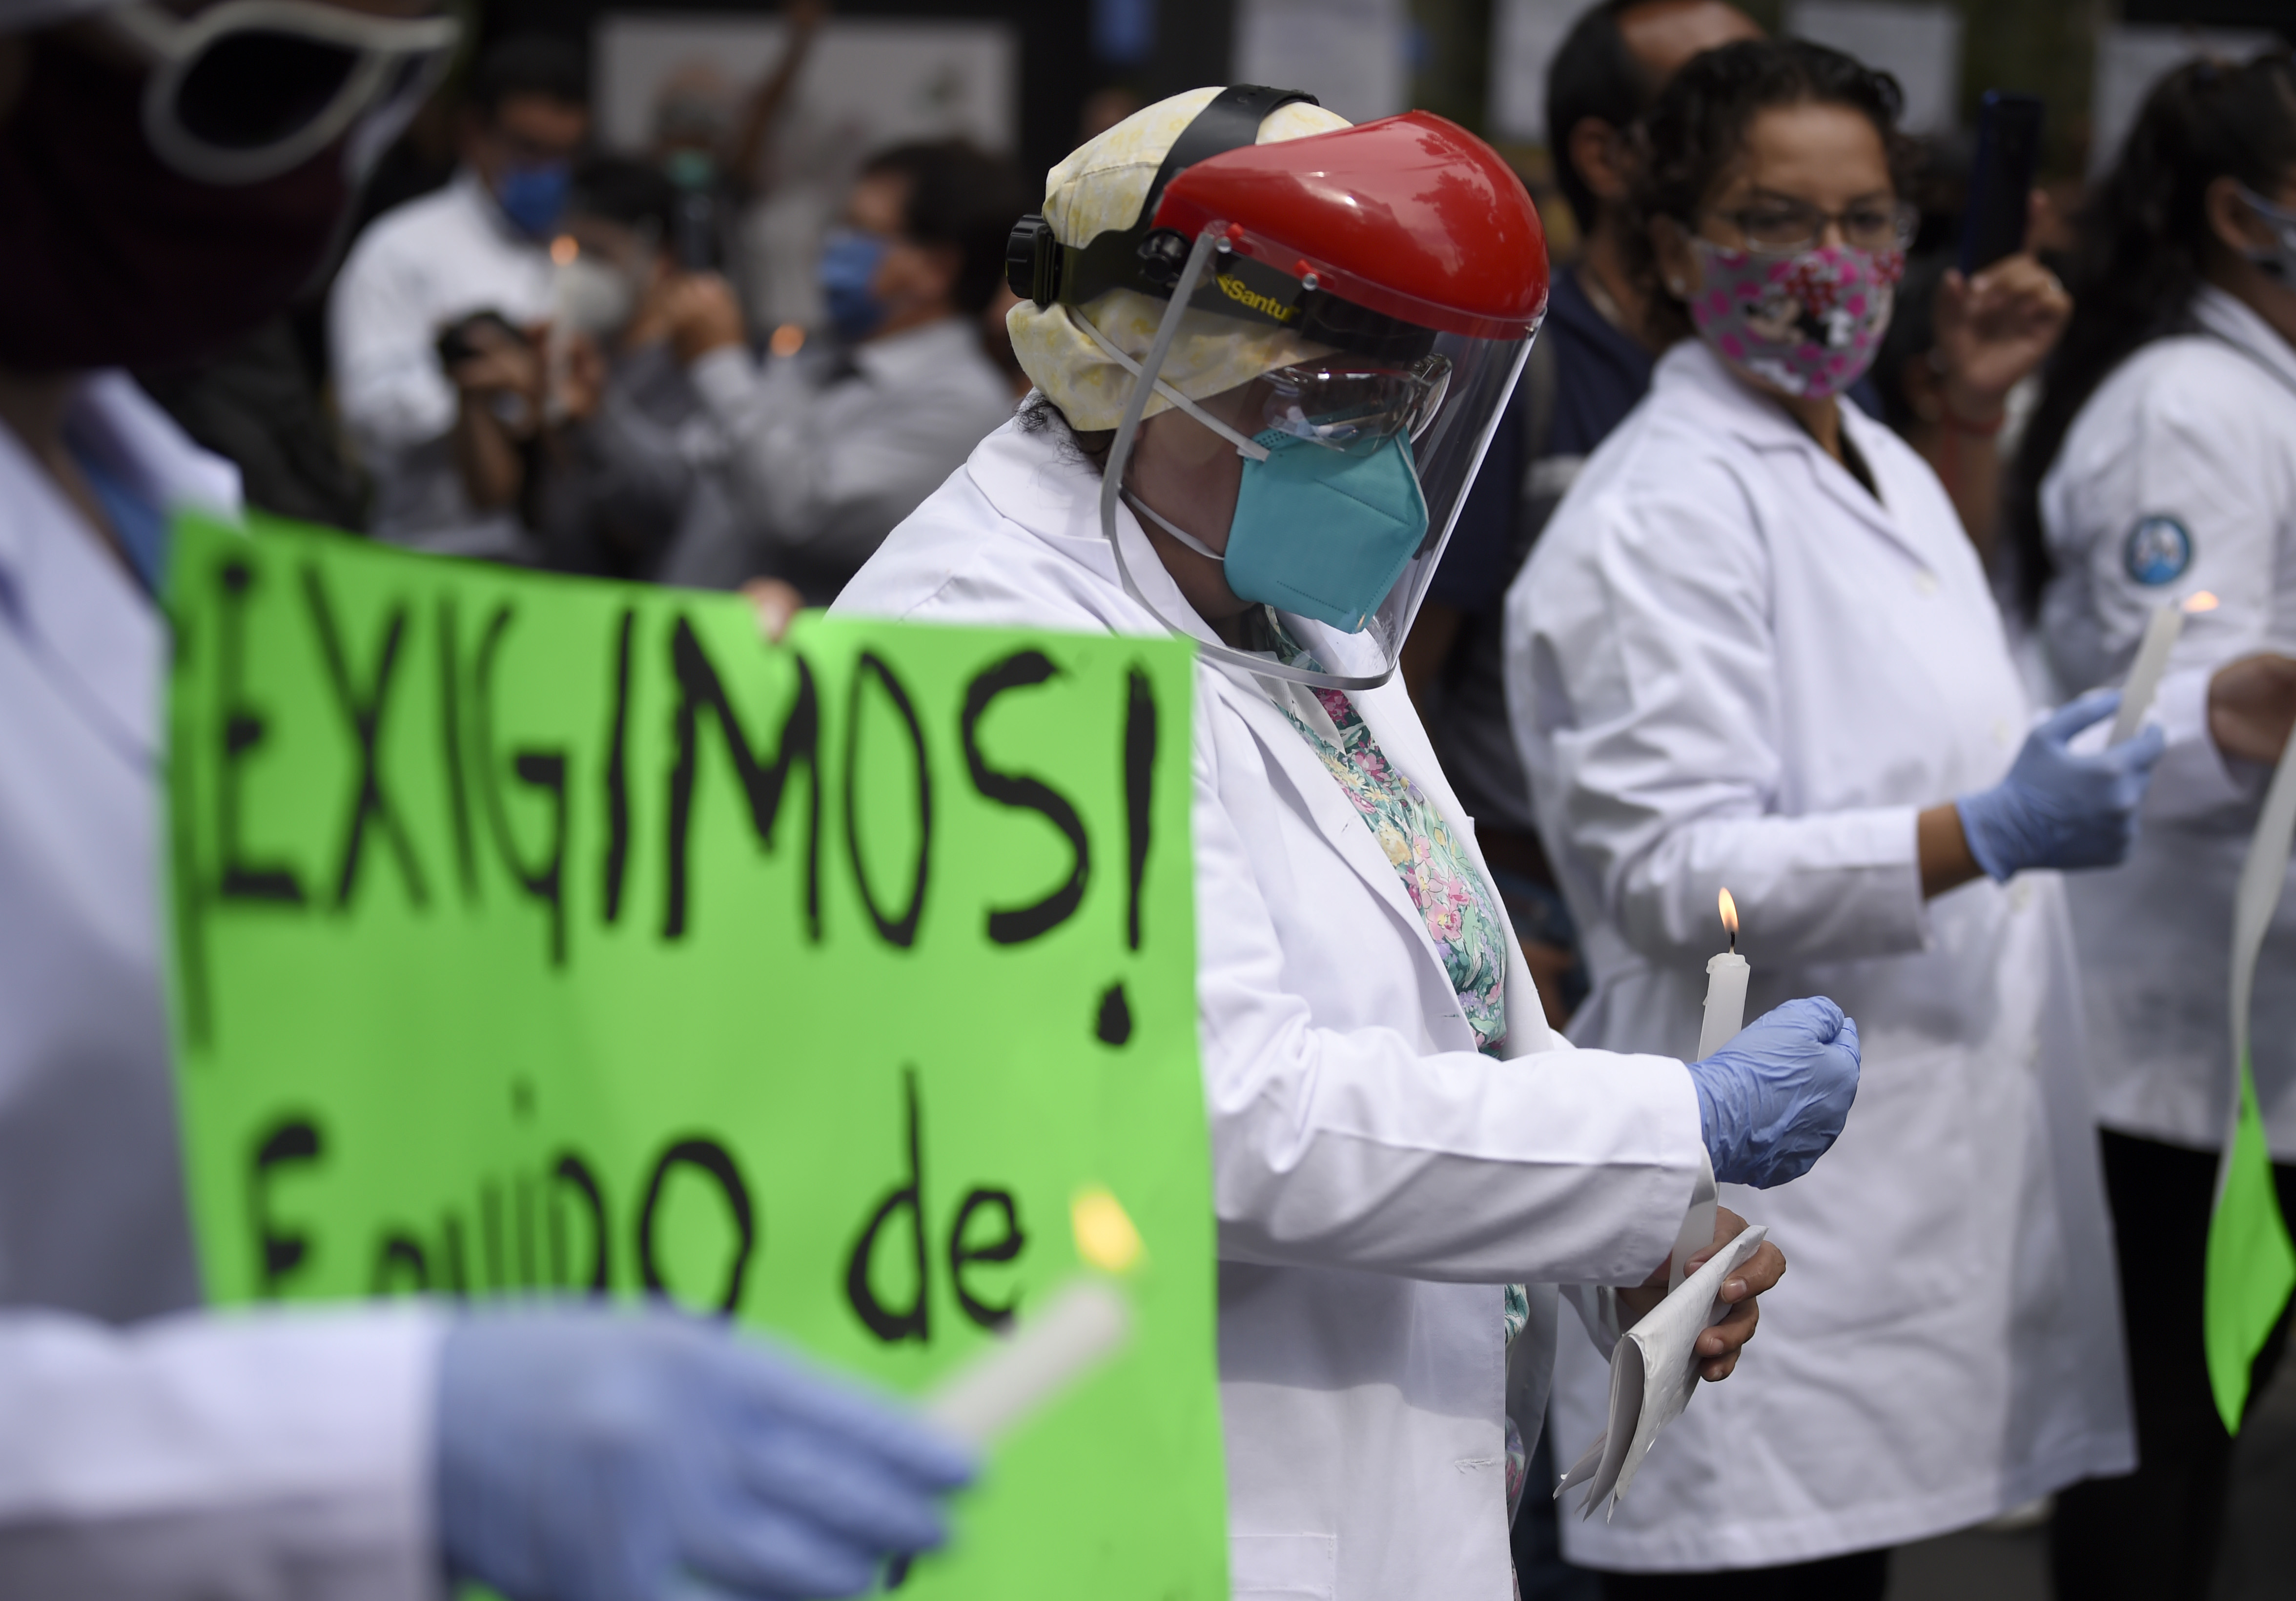 Los médicos han denunciado que los trabajos en el sector privado “a veces son muy mal pagados” (Foto: Alfredo Estrella / AFP)